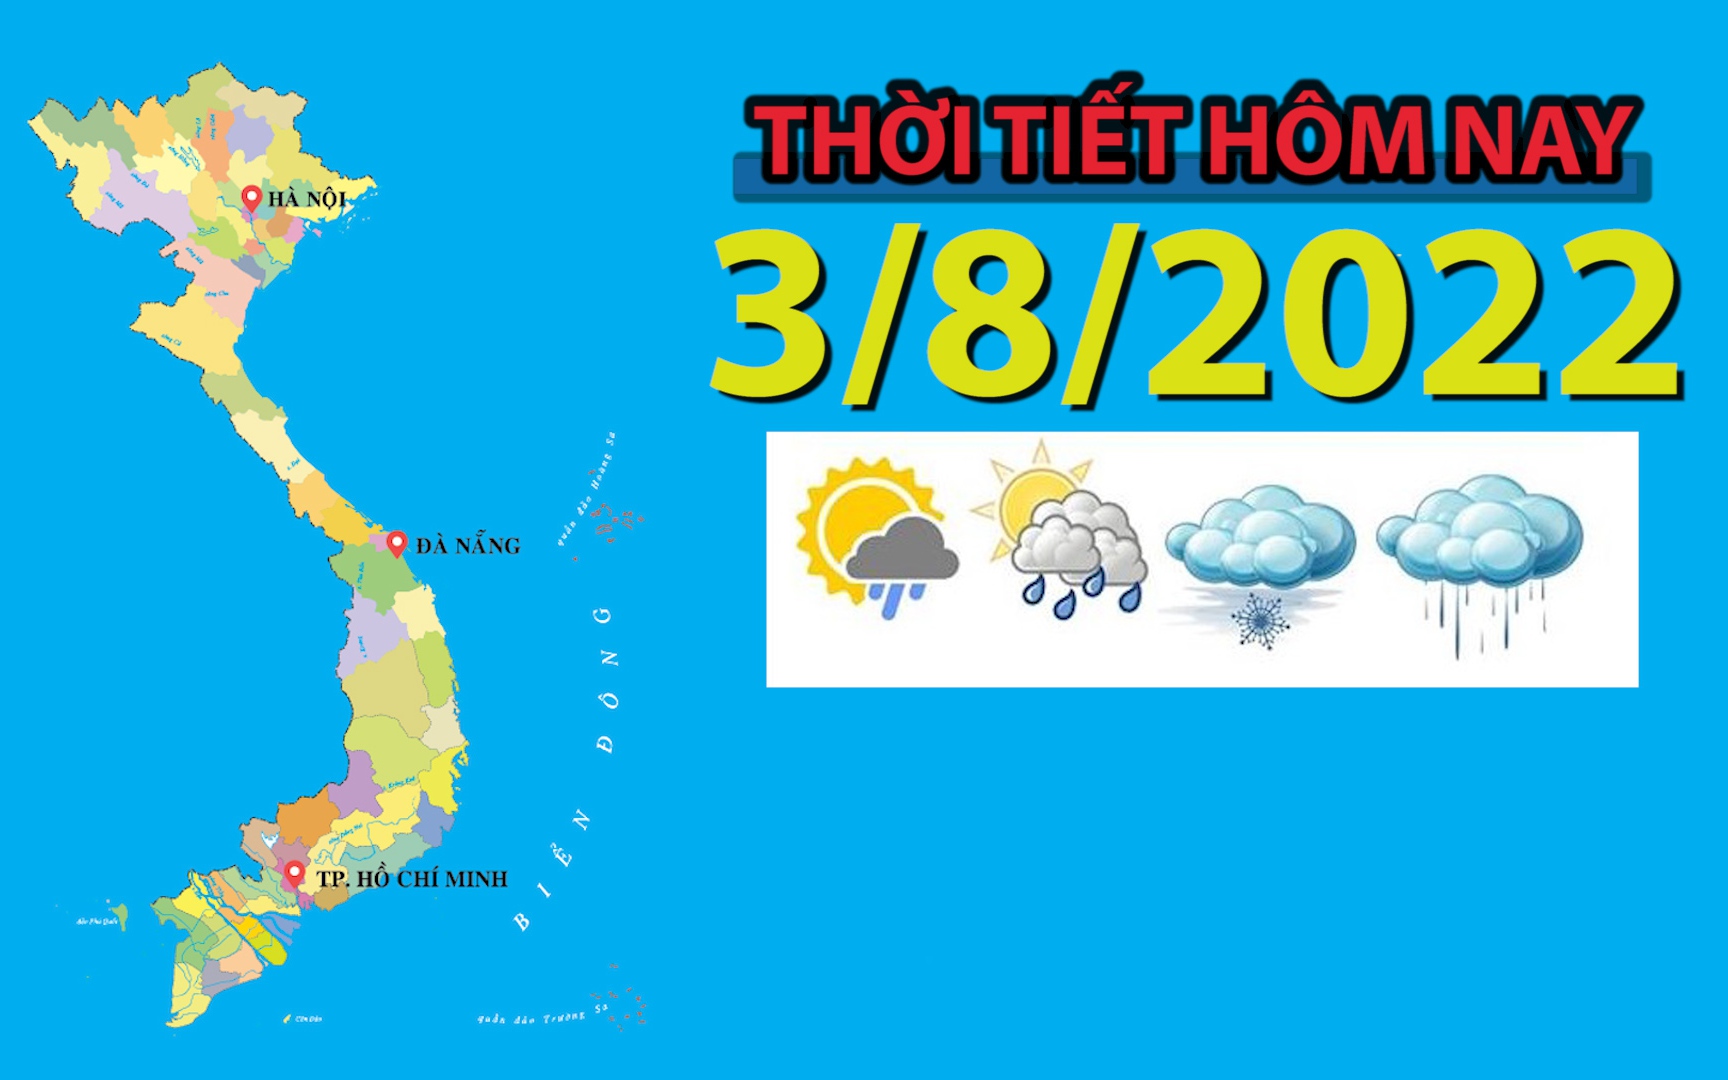 Thời tiết hôm nay 3/8/2022: Hà Nội, Bắc Bộ và Bắc Trung Bộ có nắng nóng